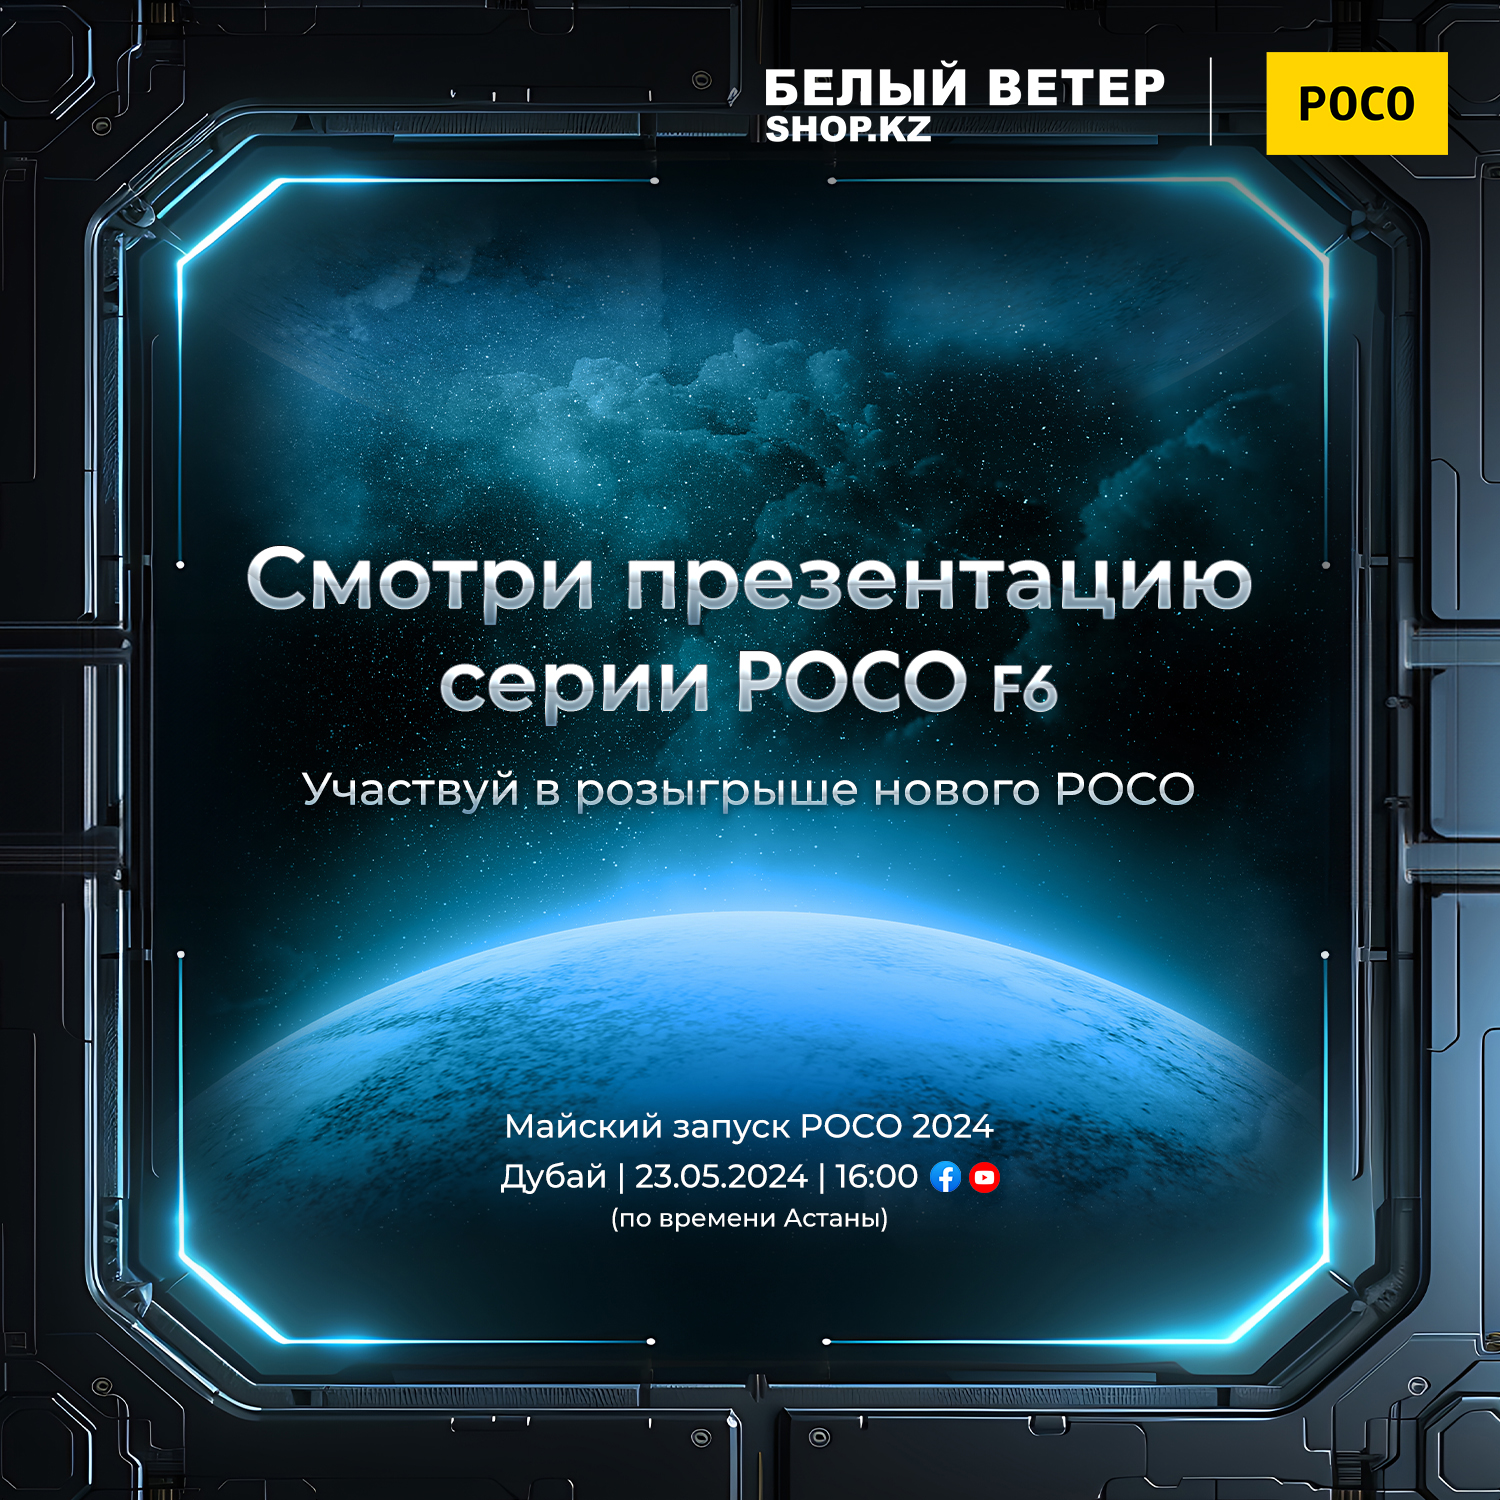 POCO объявила о глобальном запуске серии POCO F6